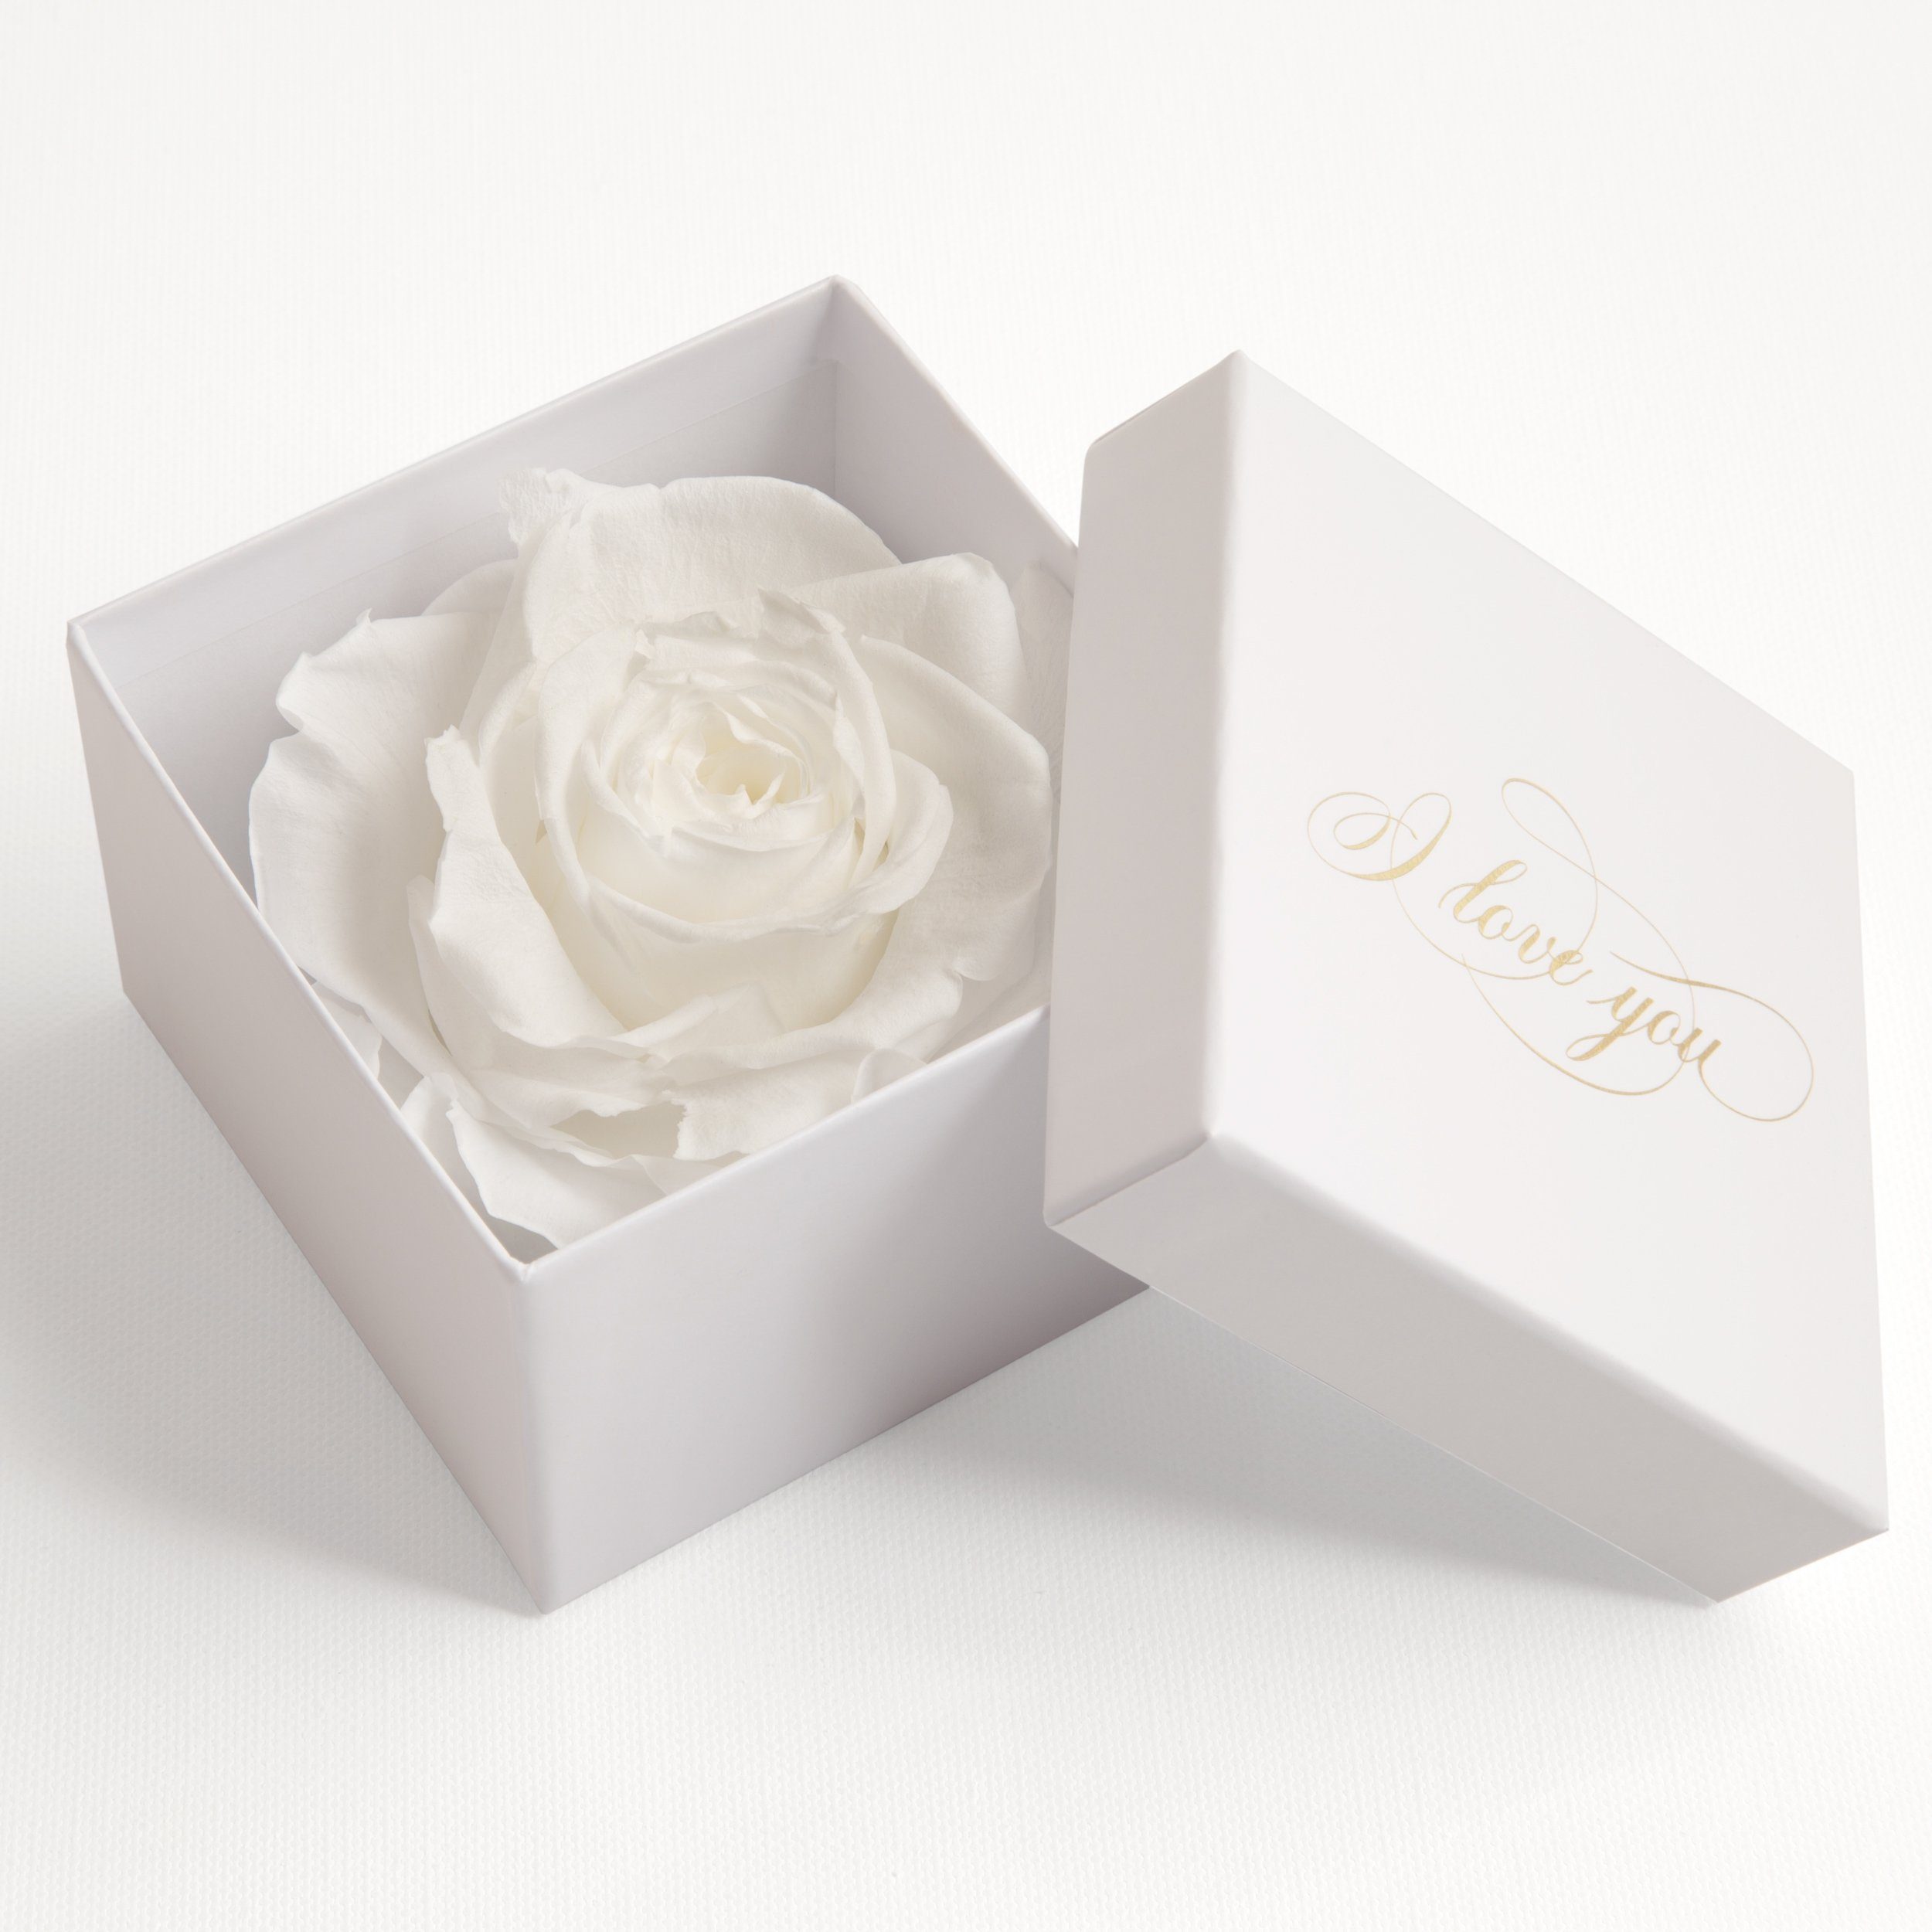 Kunstblume Infinity Rose in Box weiß I LOVE YOU Geschenk Frauen Liebesbeweis Valentinstag Rose, ROSEMARIE SCHULZ Heidelberg, Höhe 6 cm, Rose haltbar bis zu 3 Jahre